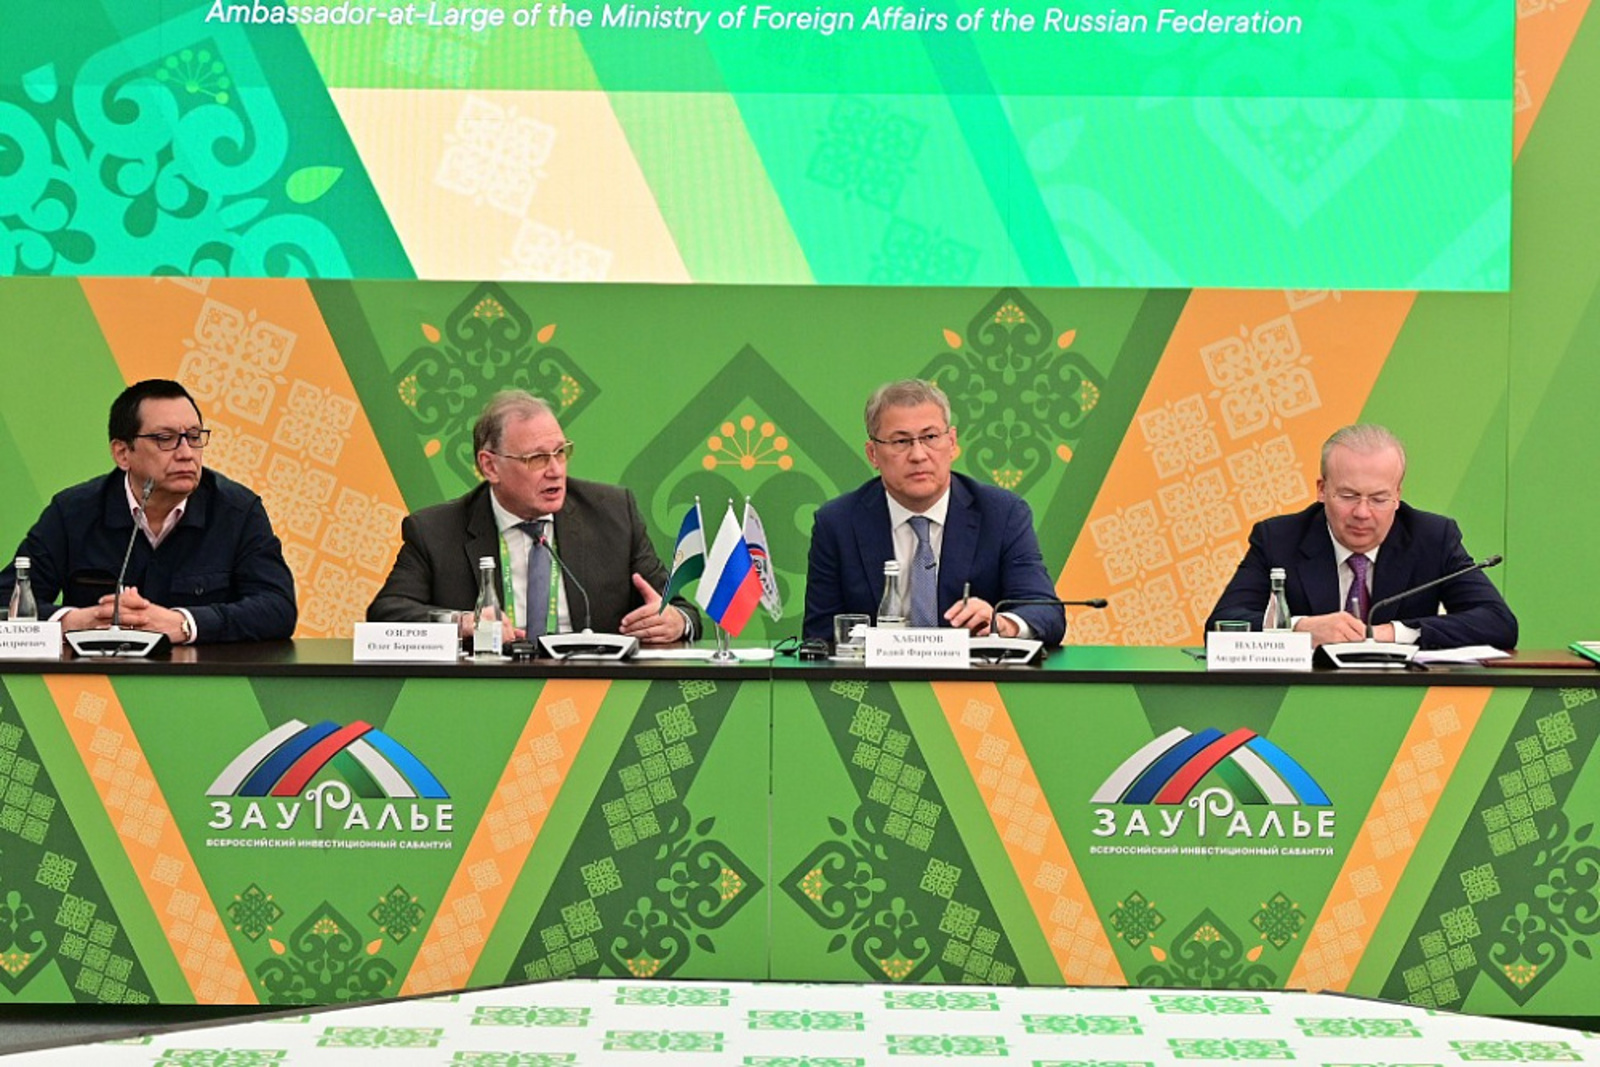 Посол МИД России назвал Карима Хакимова основателем российской дипломатии в Башкирии